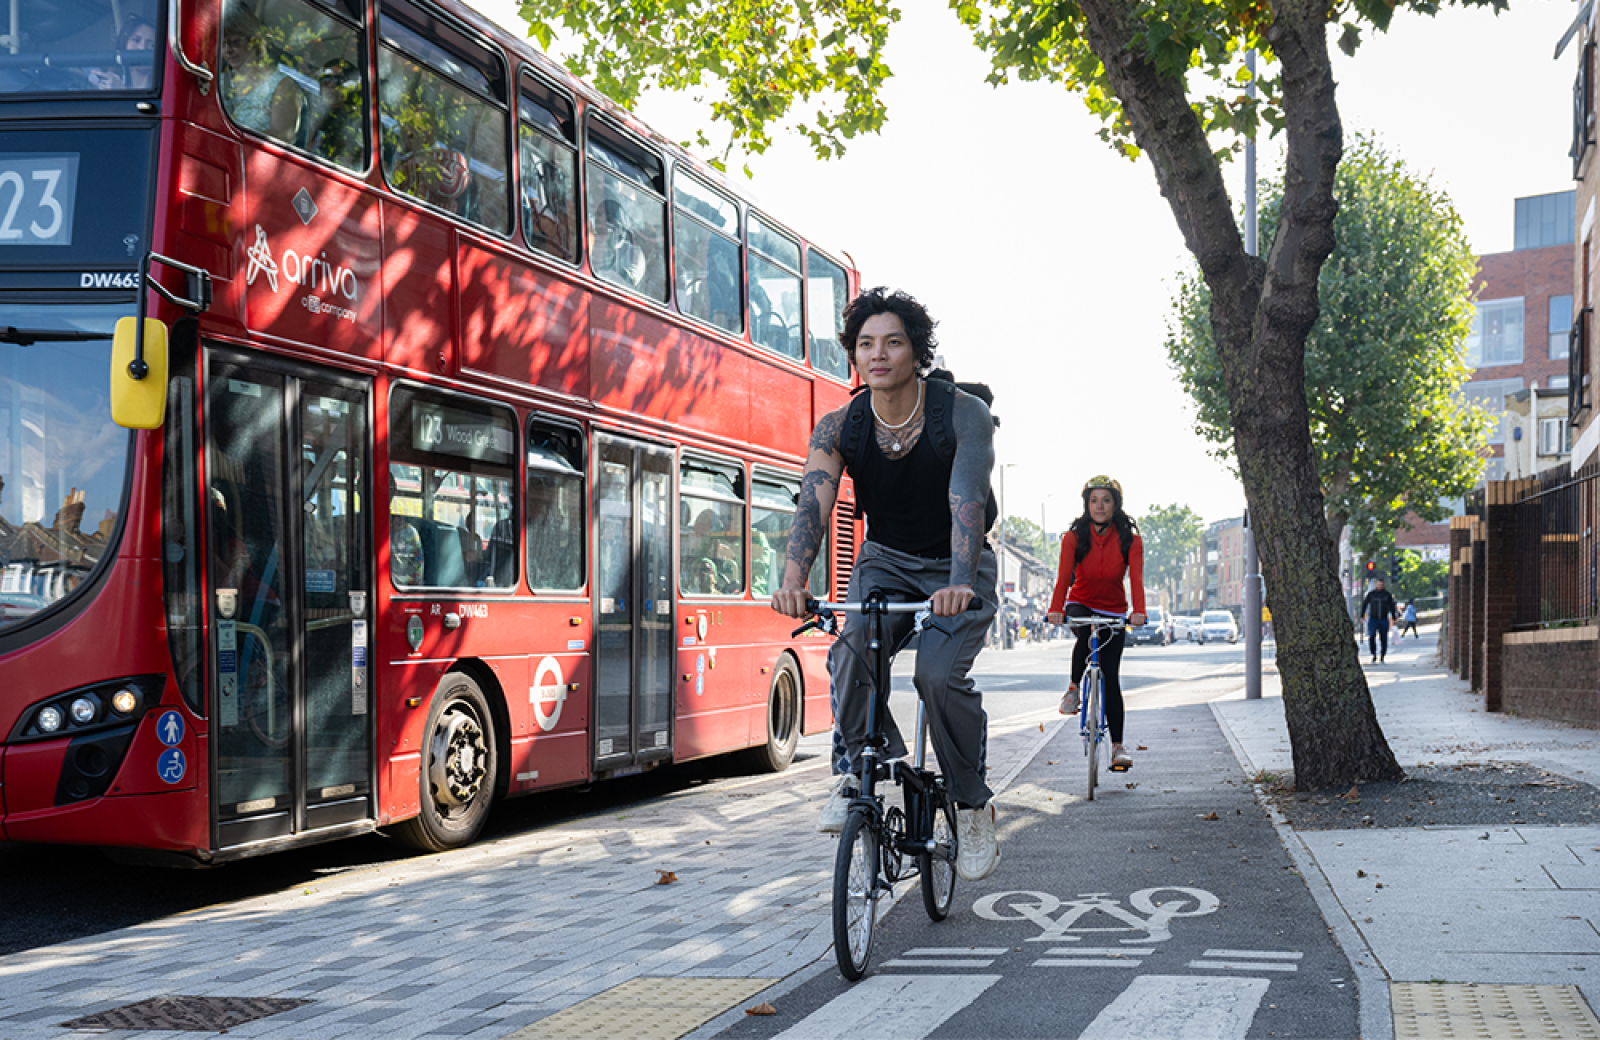 People cycling alongside a bus in London